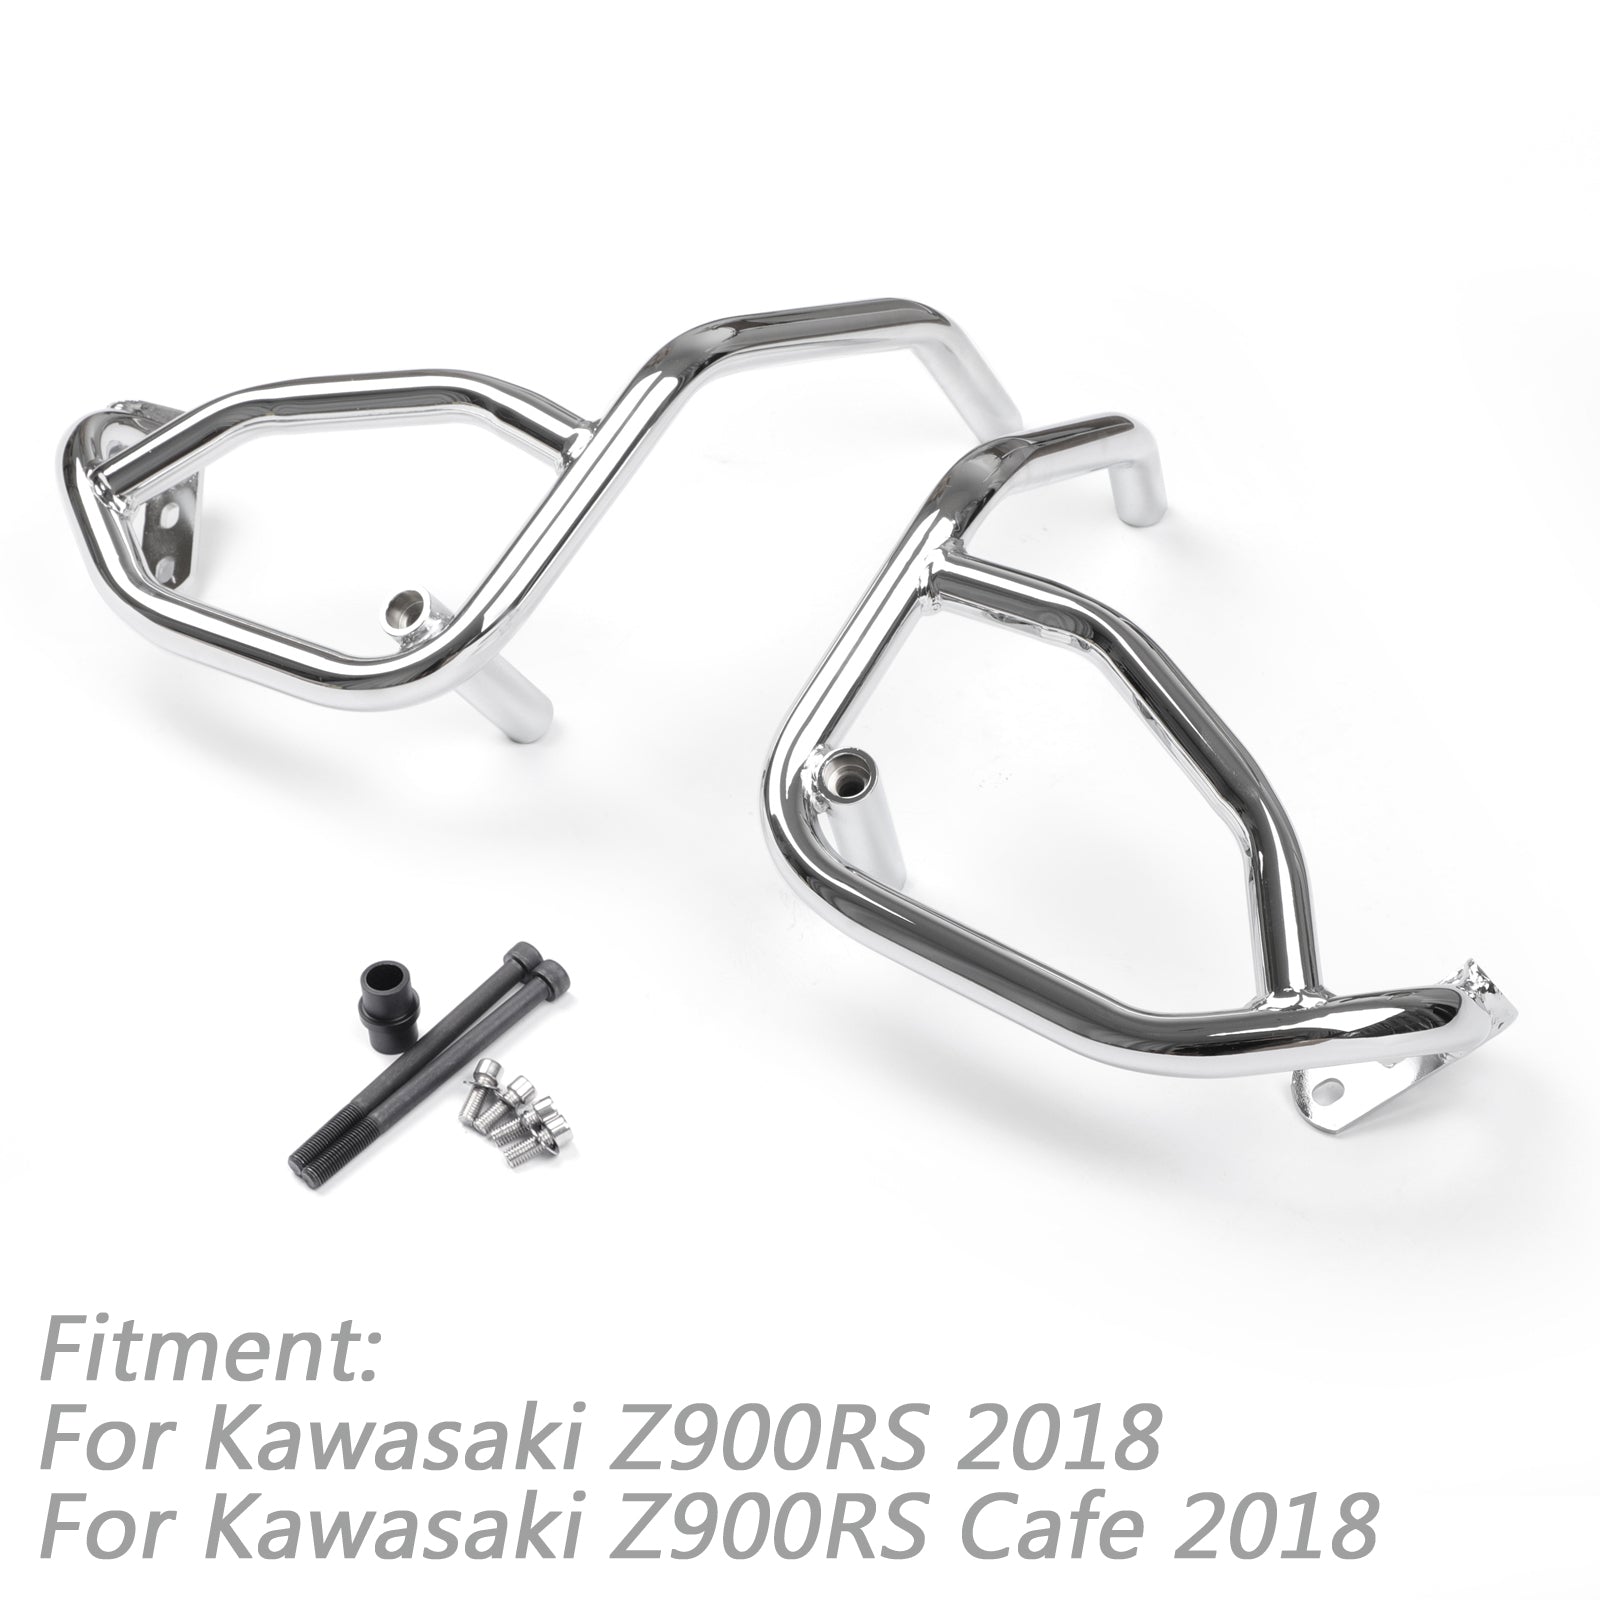 Barras de choque del protector del motor de la motocicleta de la carretera para Kawasaki Z900RS Cafe 2018 genérico